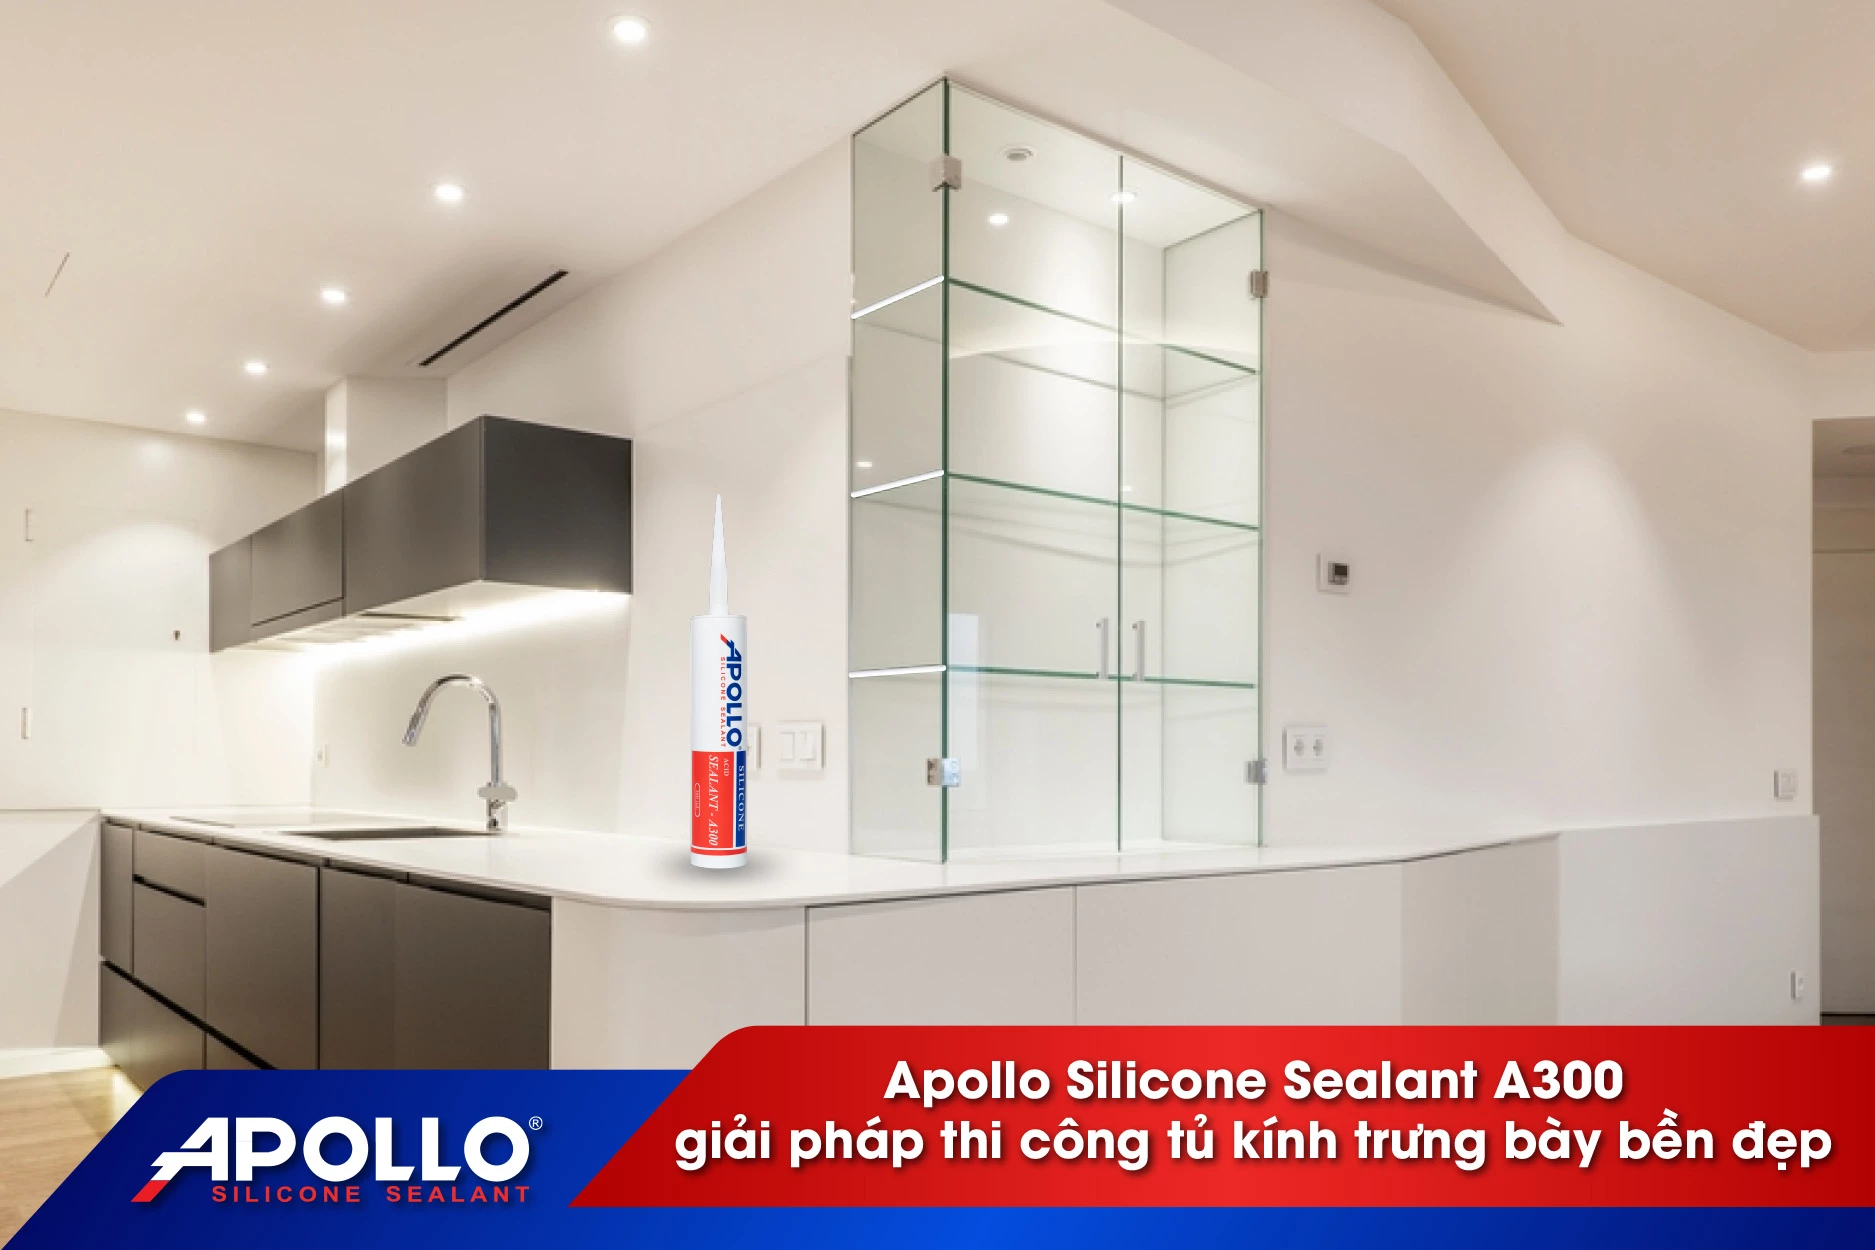 Apollo Silicone Sealant A300 giải pháp thi công tủ kính trưng bày bền đẹp